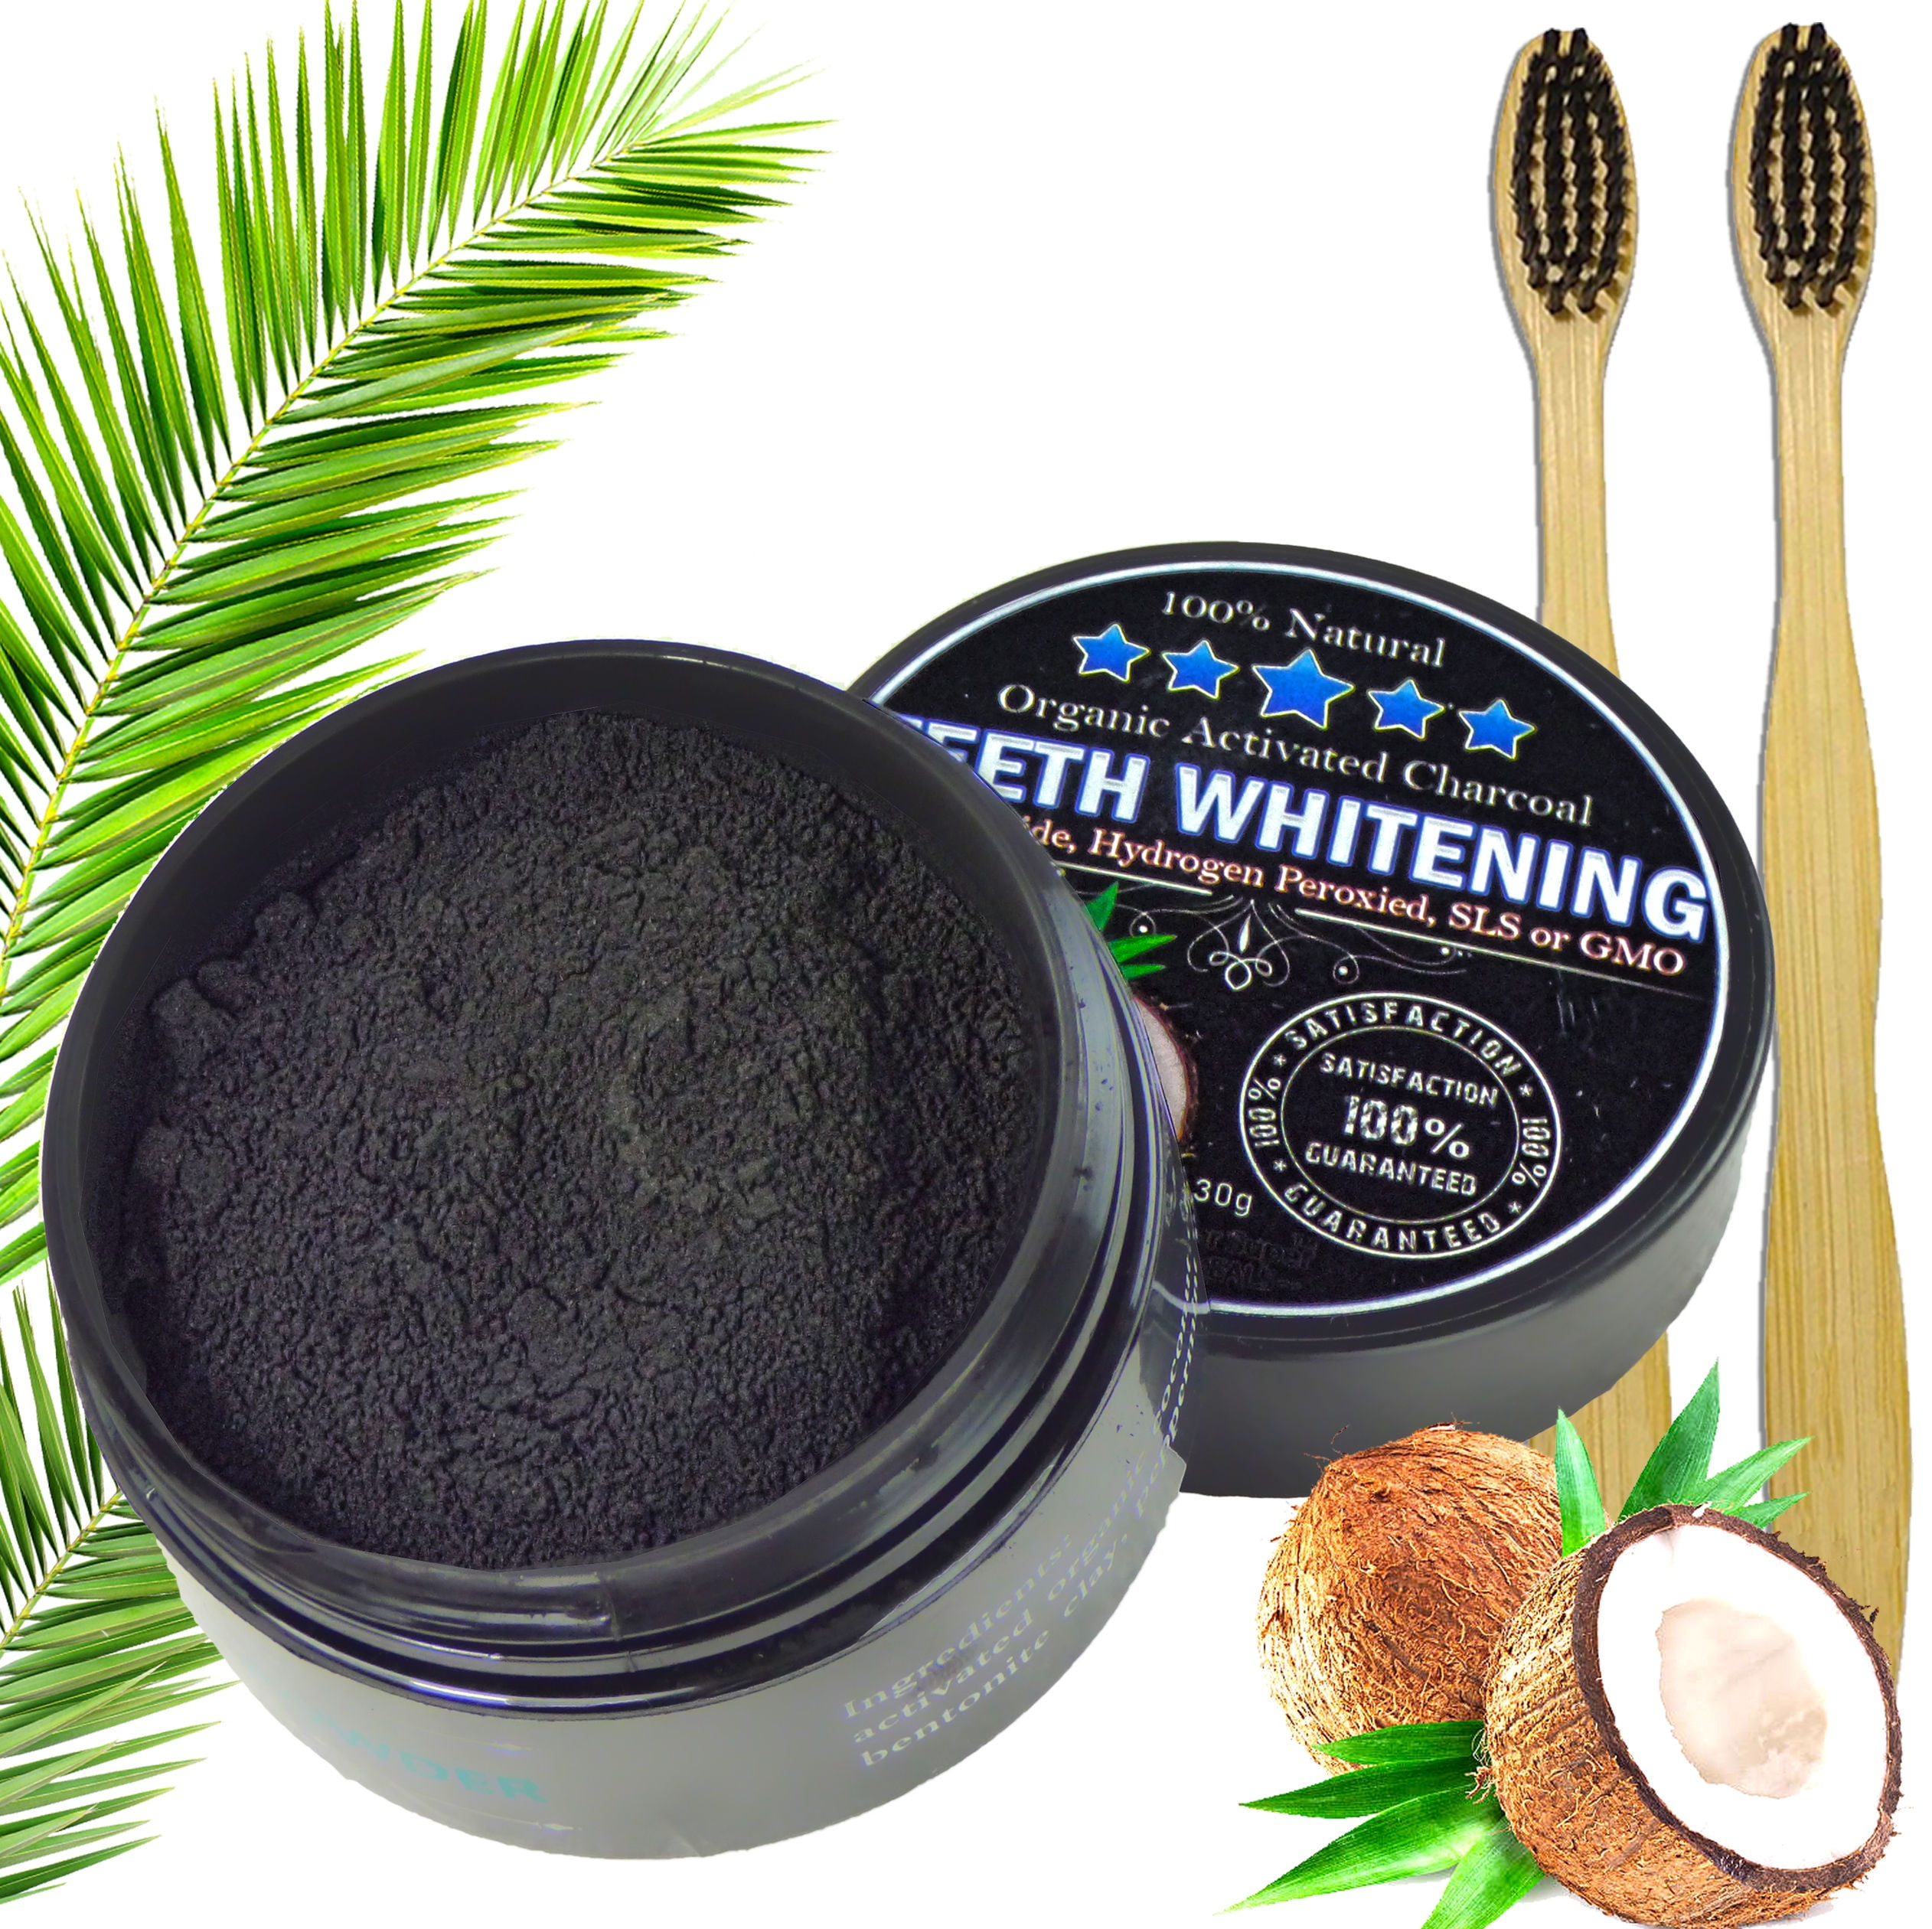 Schwarz Libartly Natural Organic Activated Charcoal Bamboo Teeth Whitening Powder Zahnbürste für Männer Frauen 